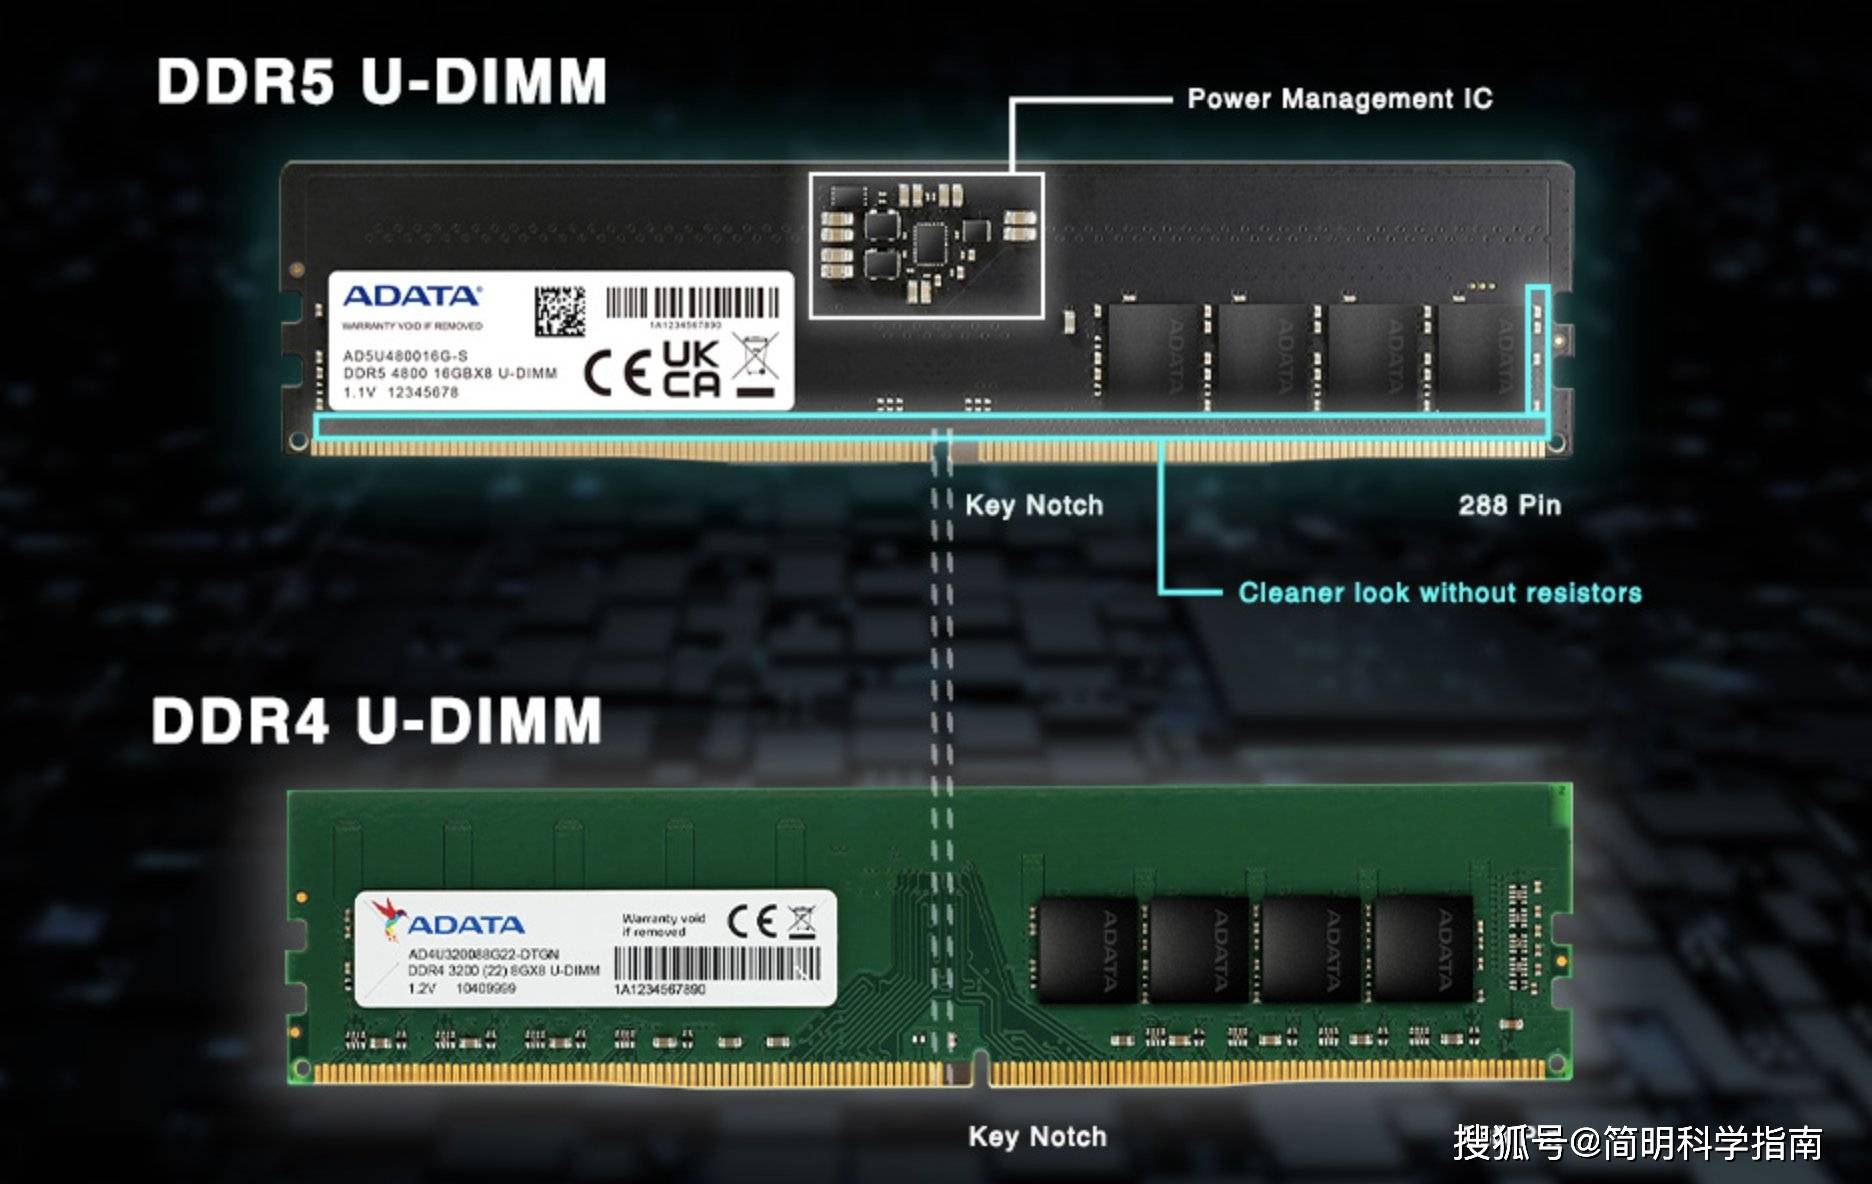 ddr4的电脑 探讨DDR4电脑的独特魅力及性能提升，从多角度解读DDR4内存技术  第4张